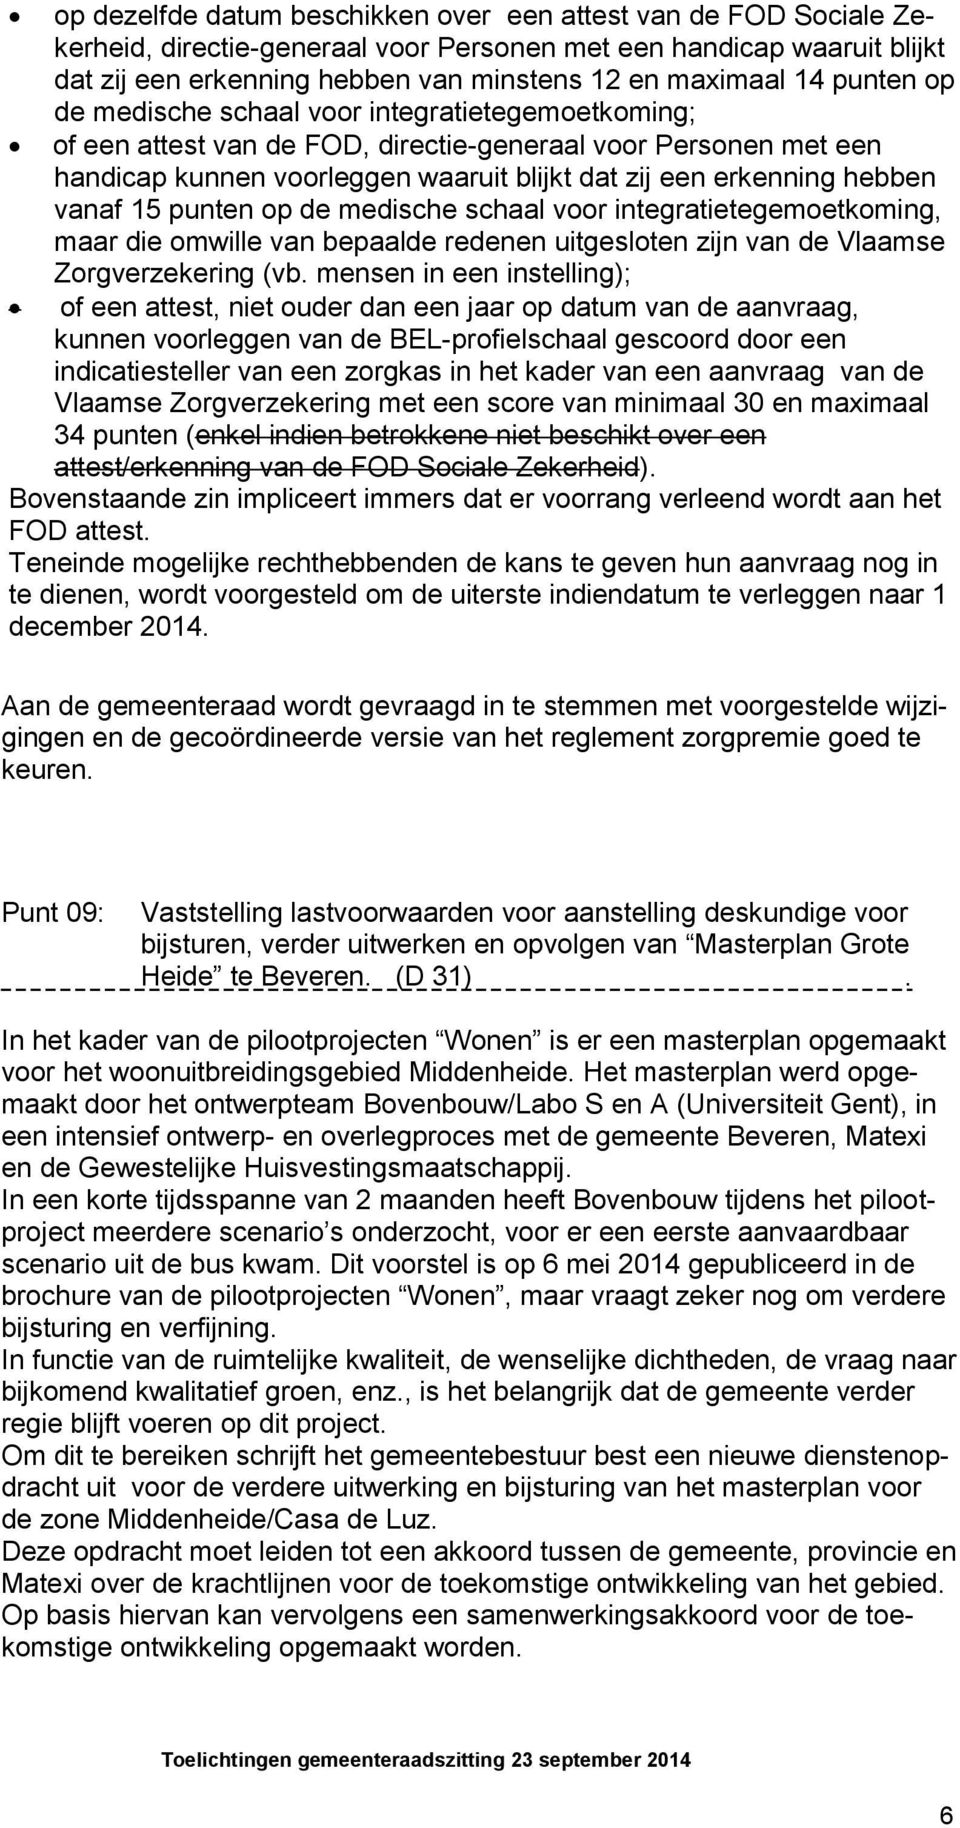 vanaf 15 punten op de medische schaal voor integratietegemoetkoming, maar die omwille van bepaalde redenen uitgesloten zijn van de Vlaamse Zorgverzekering (vb.